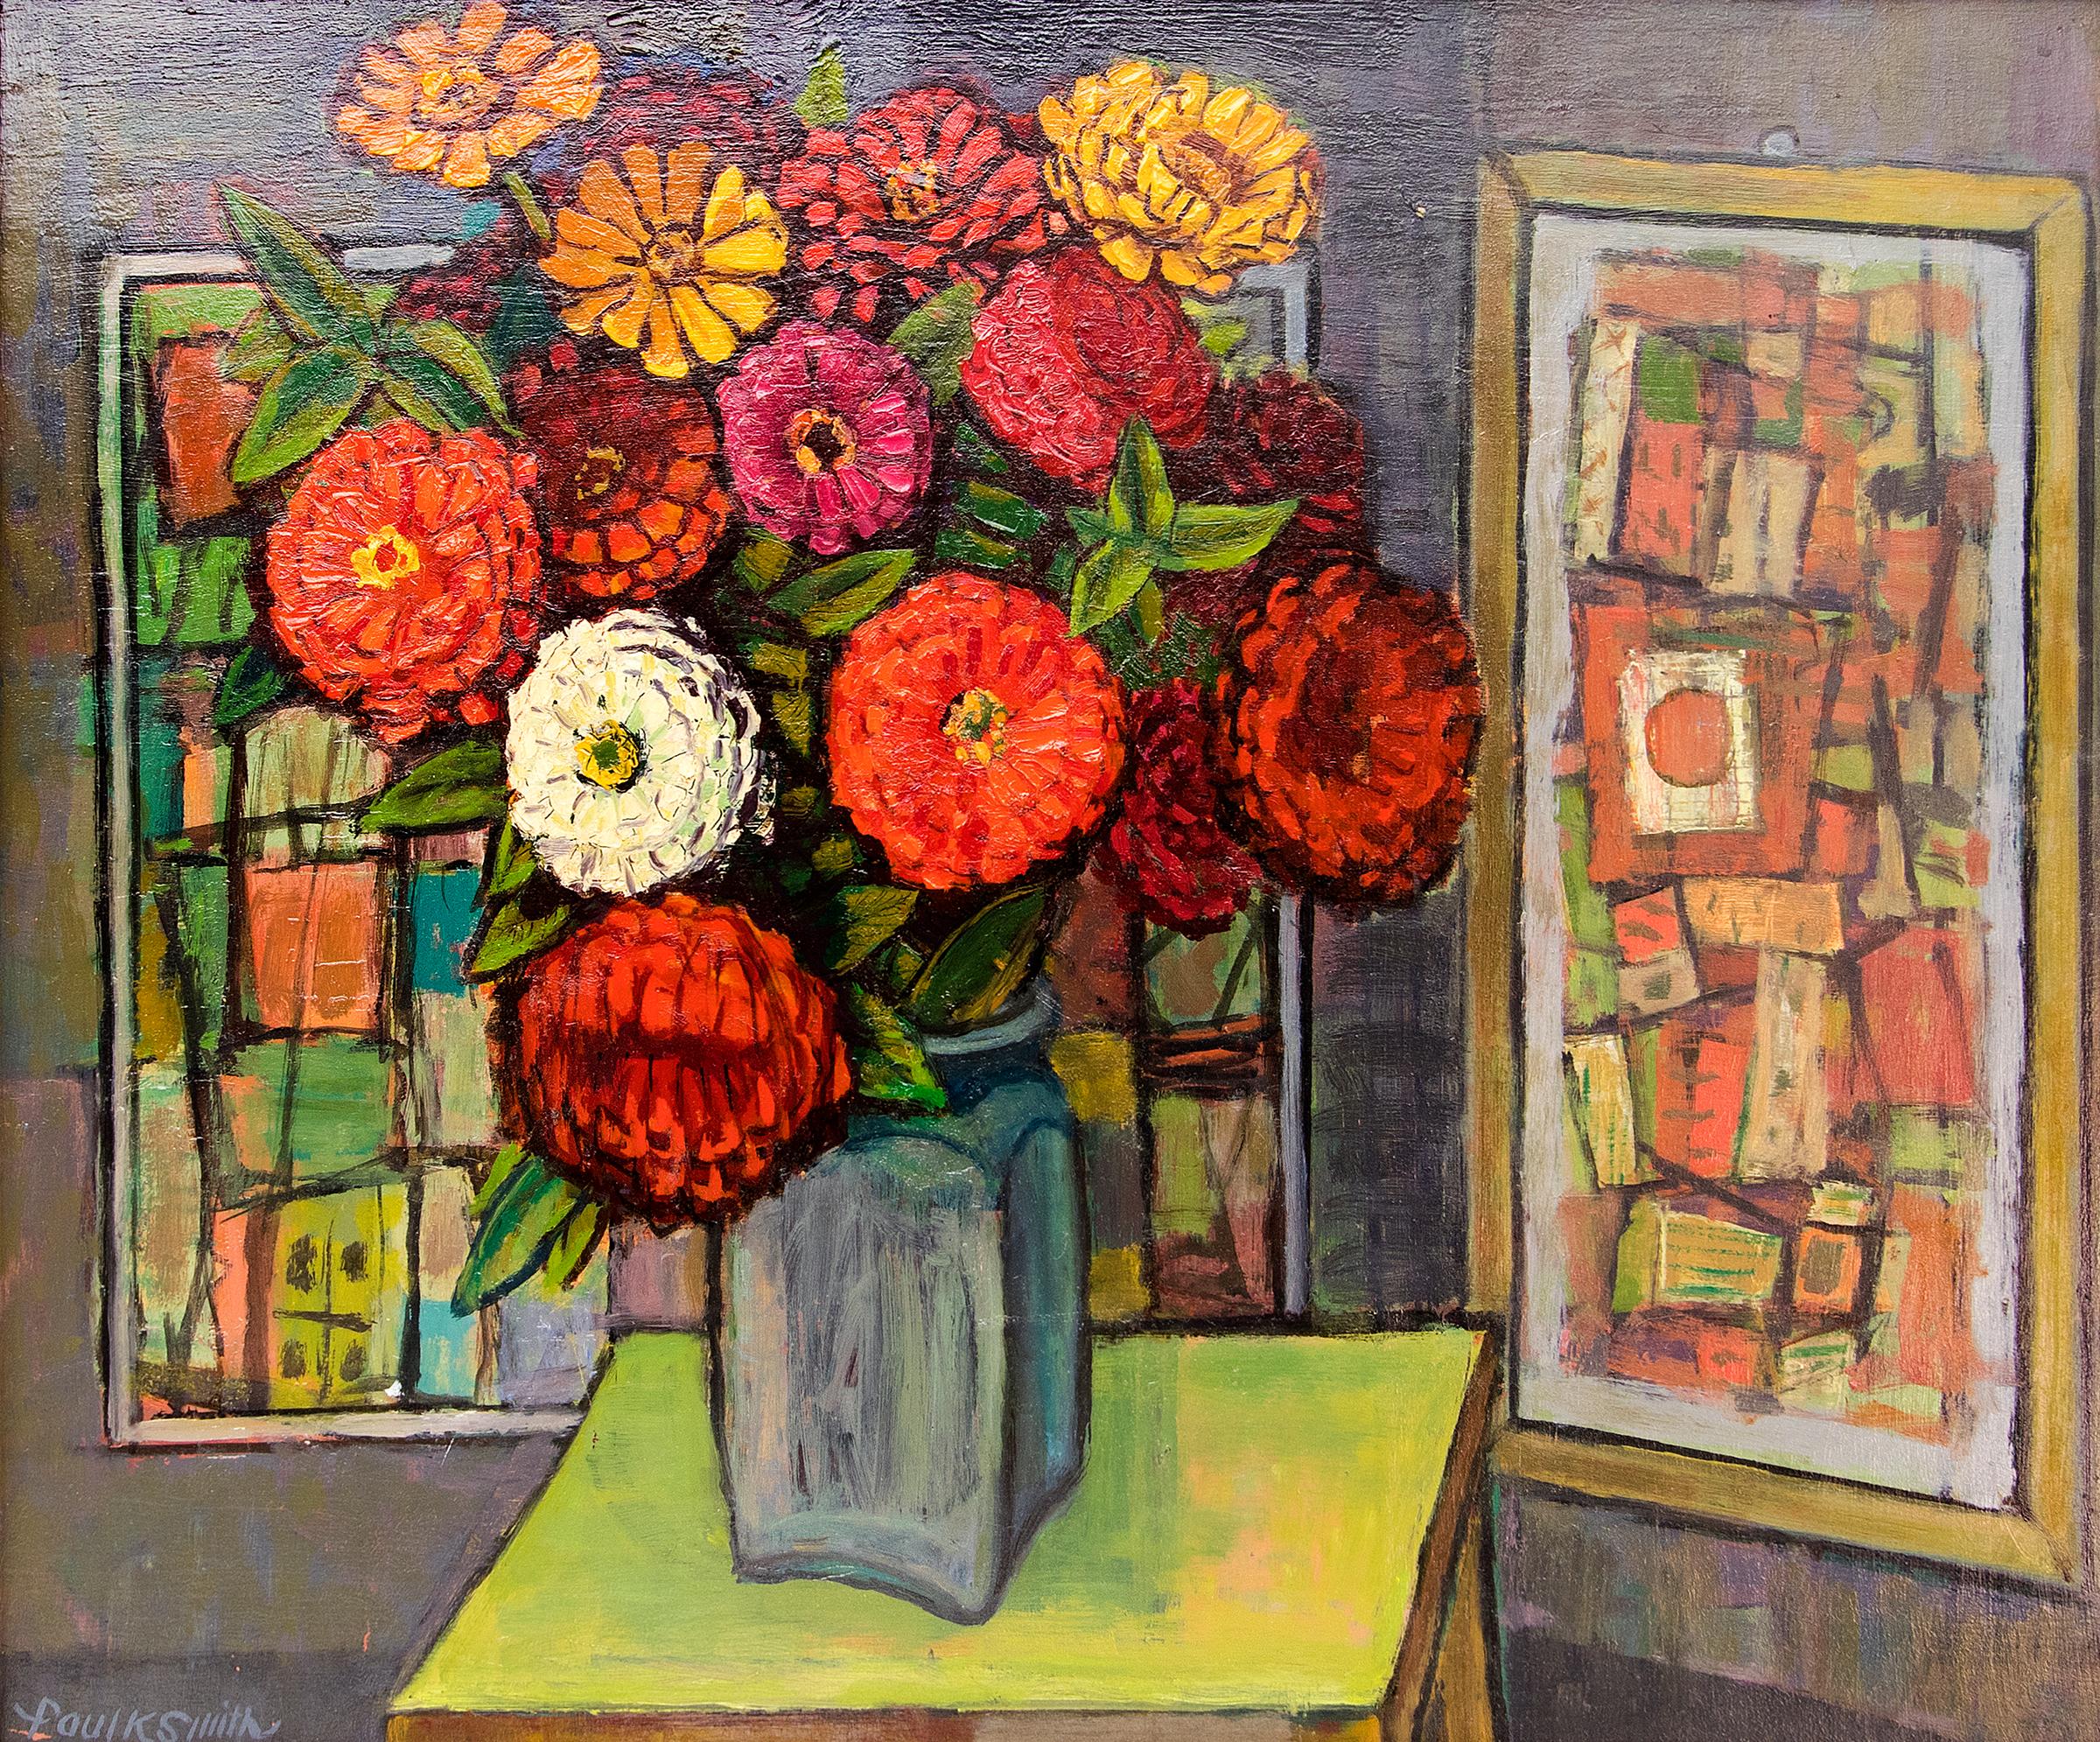 Abstraktes Stillleben der amerikanischen Moderne mit Zinnia-Blumen, Rot-Orange – Painting von Paul K Smith